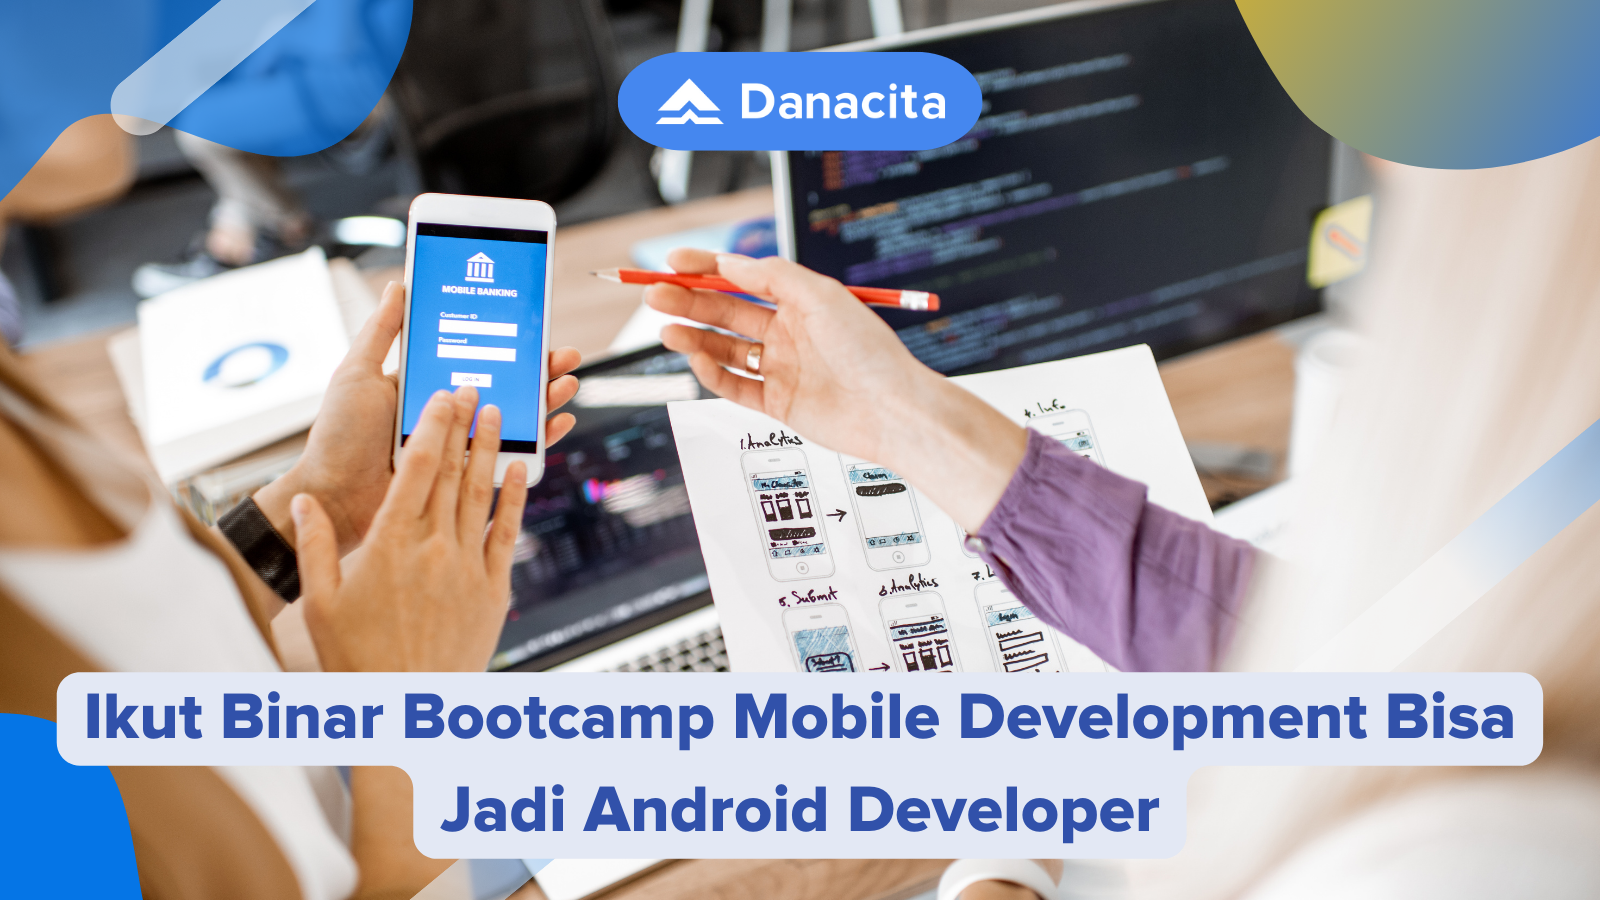 Ikut-Binar-Bootcamp-Mobile-Development-Bisa-Jadi-Android-Developer